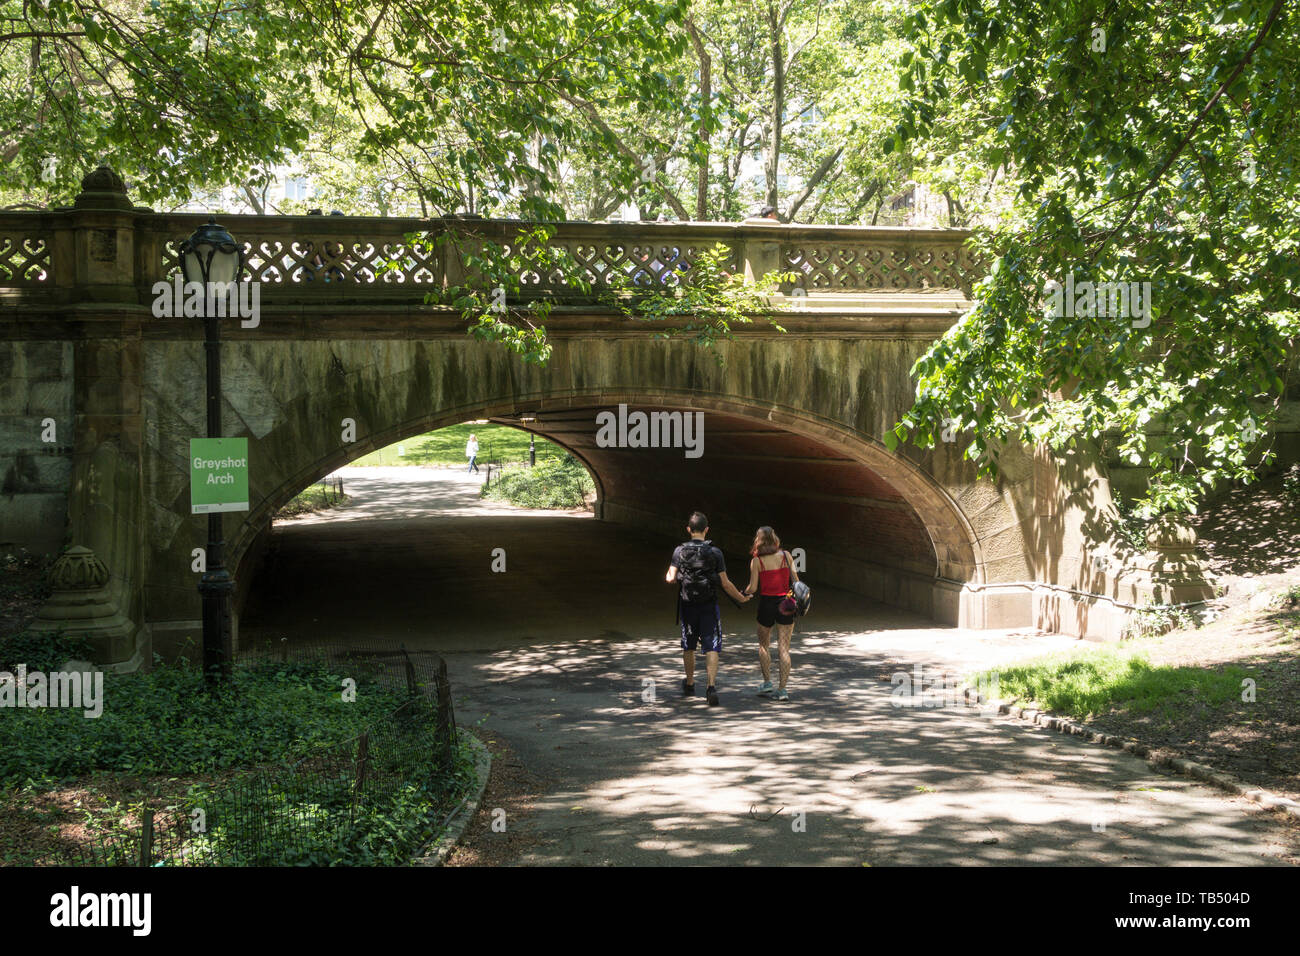 Grayshot Arch est populaire auprès des touristes, Central Park, NYC, USA Banque D'Images